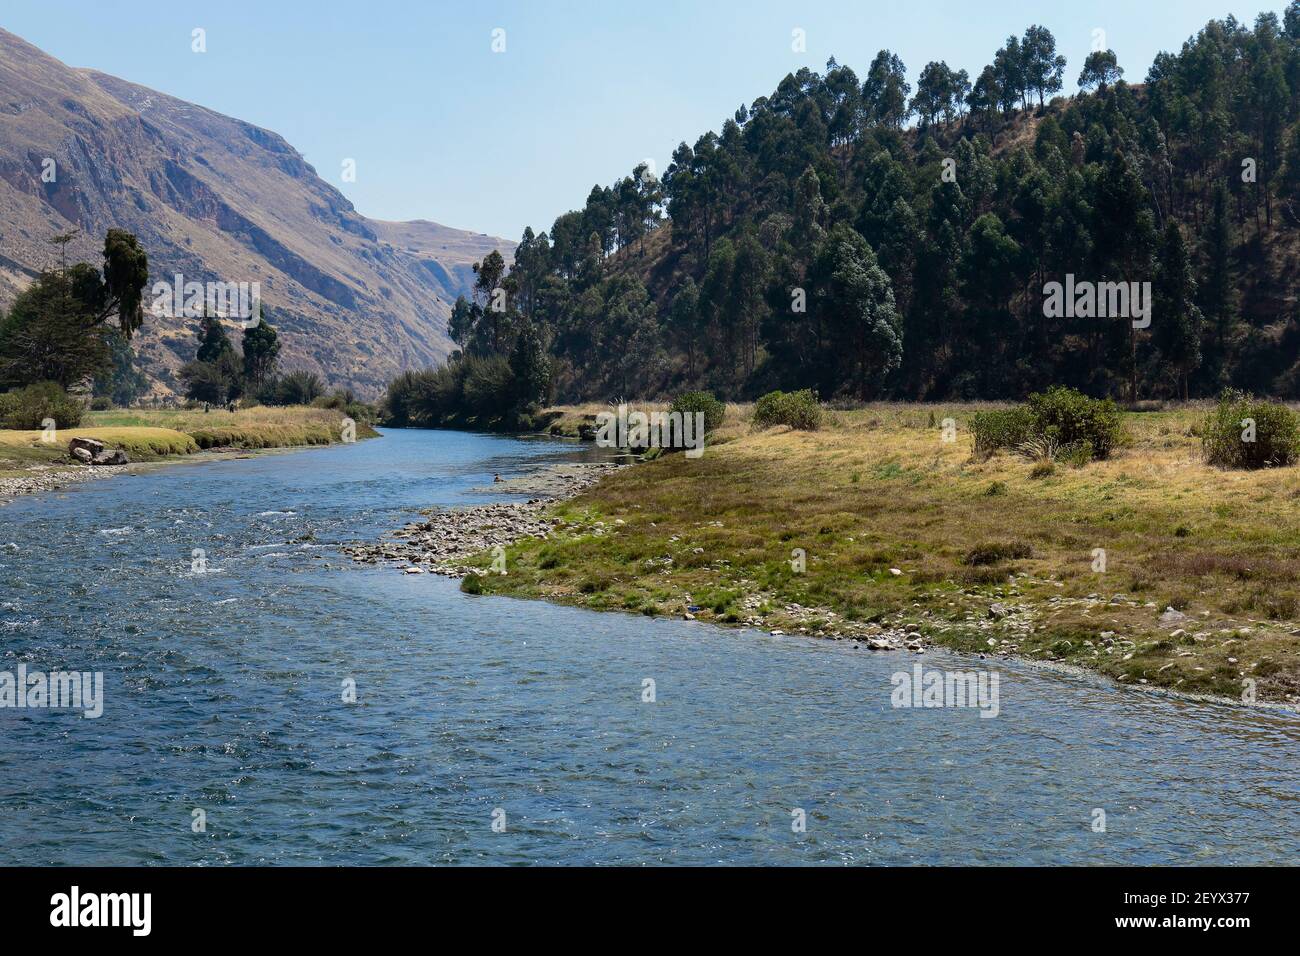 Ruhige Szene einer Andenlandschaft neben dem Fluss eingebettet in das Innere der hohen Berge. Huancayo - Peru Stockfoto